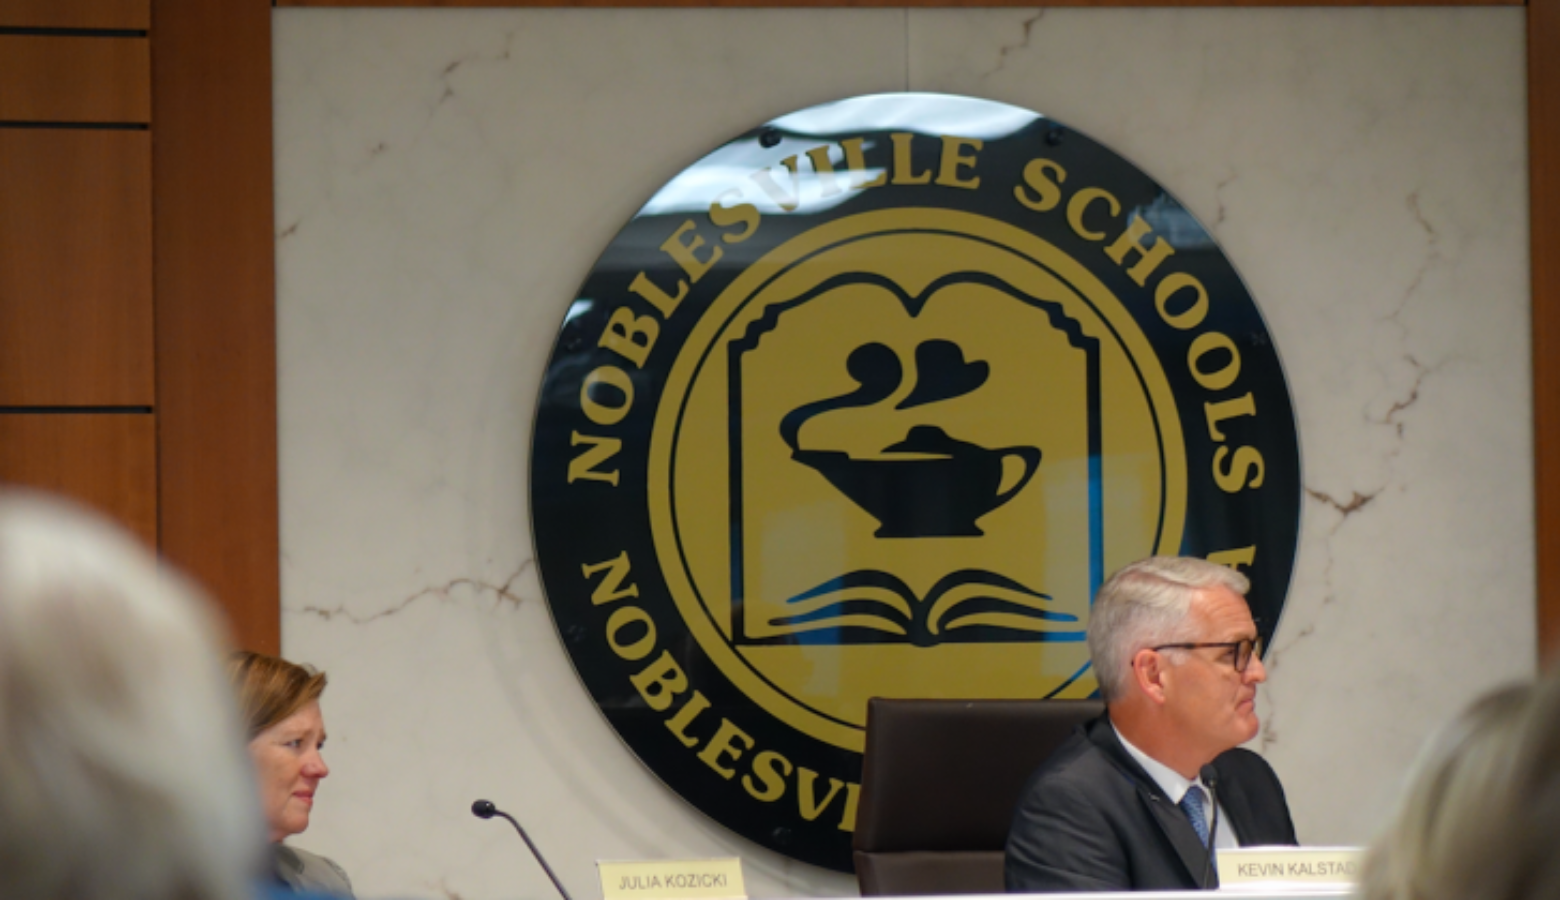 The Noblesville Schools Board